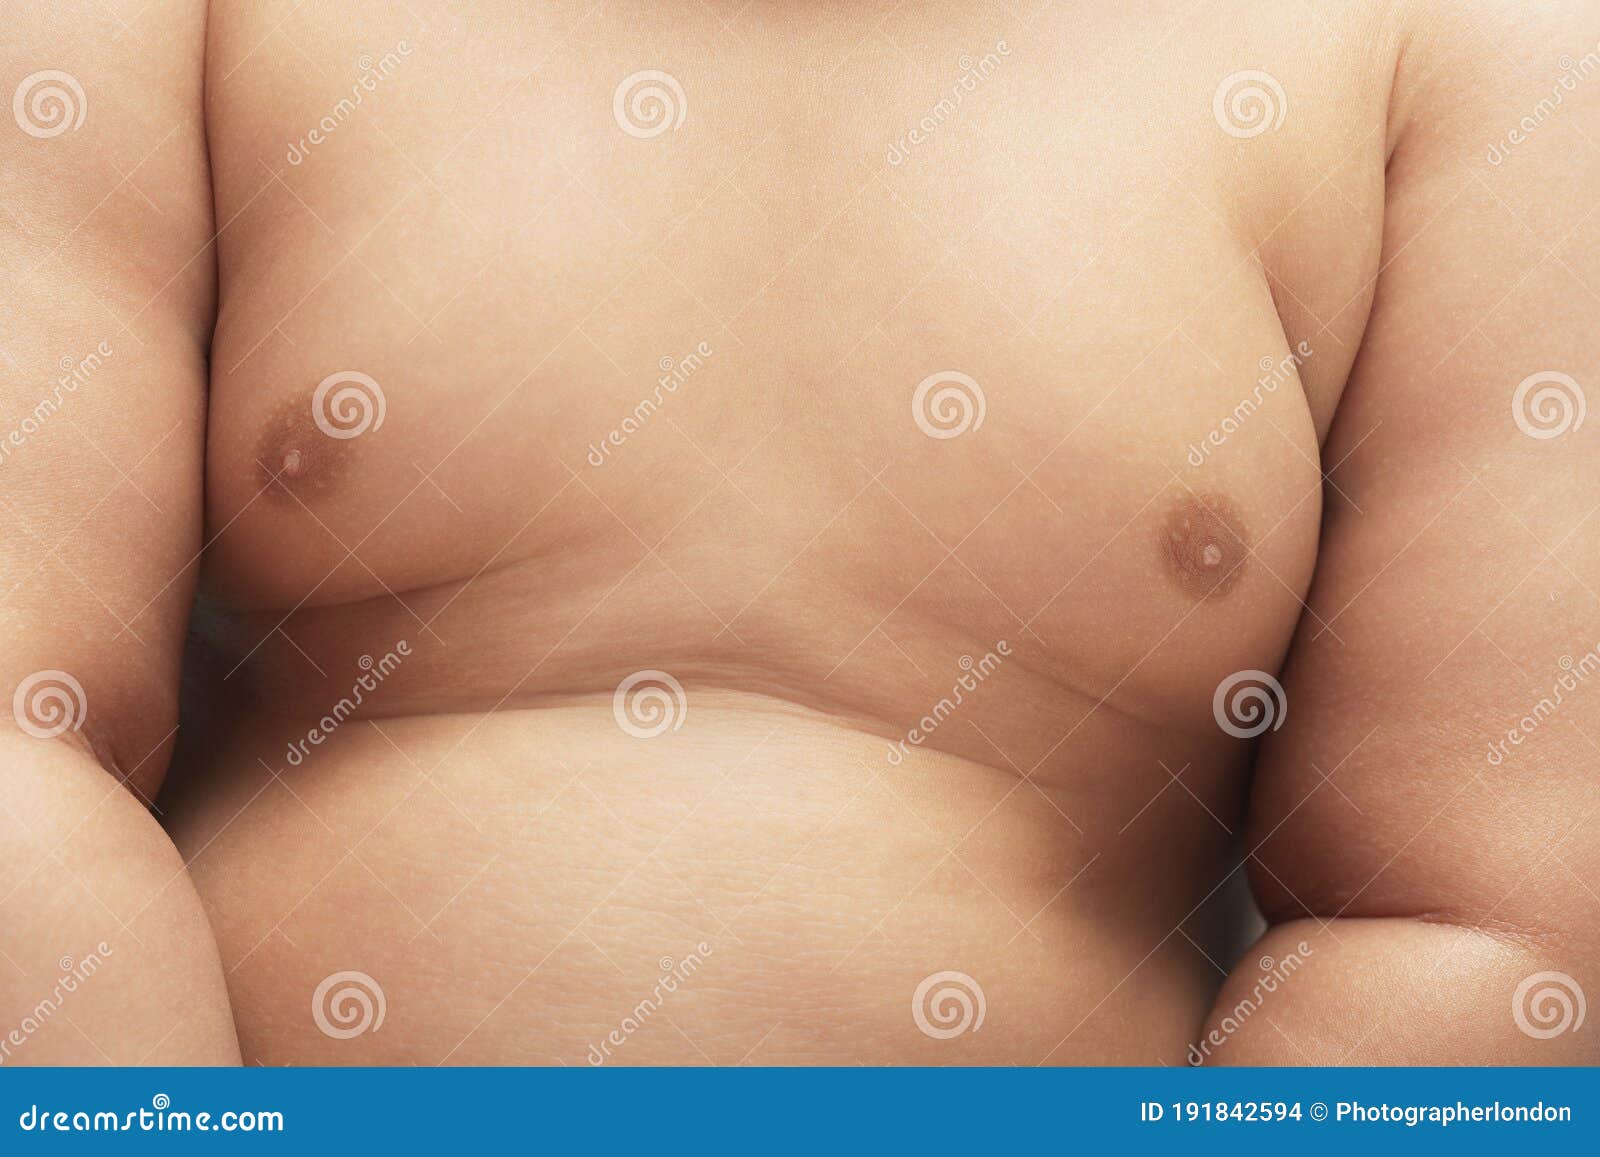 Fatboy - nude photos